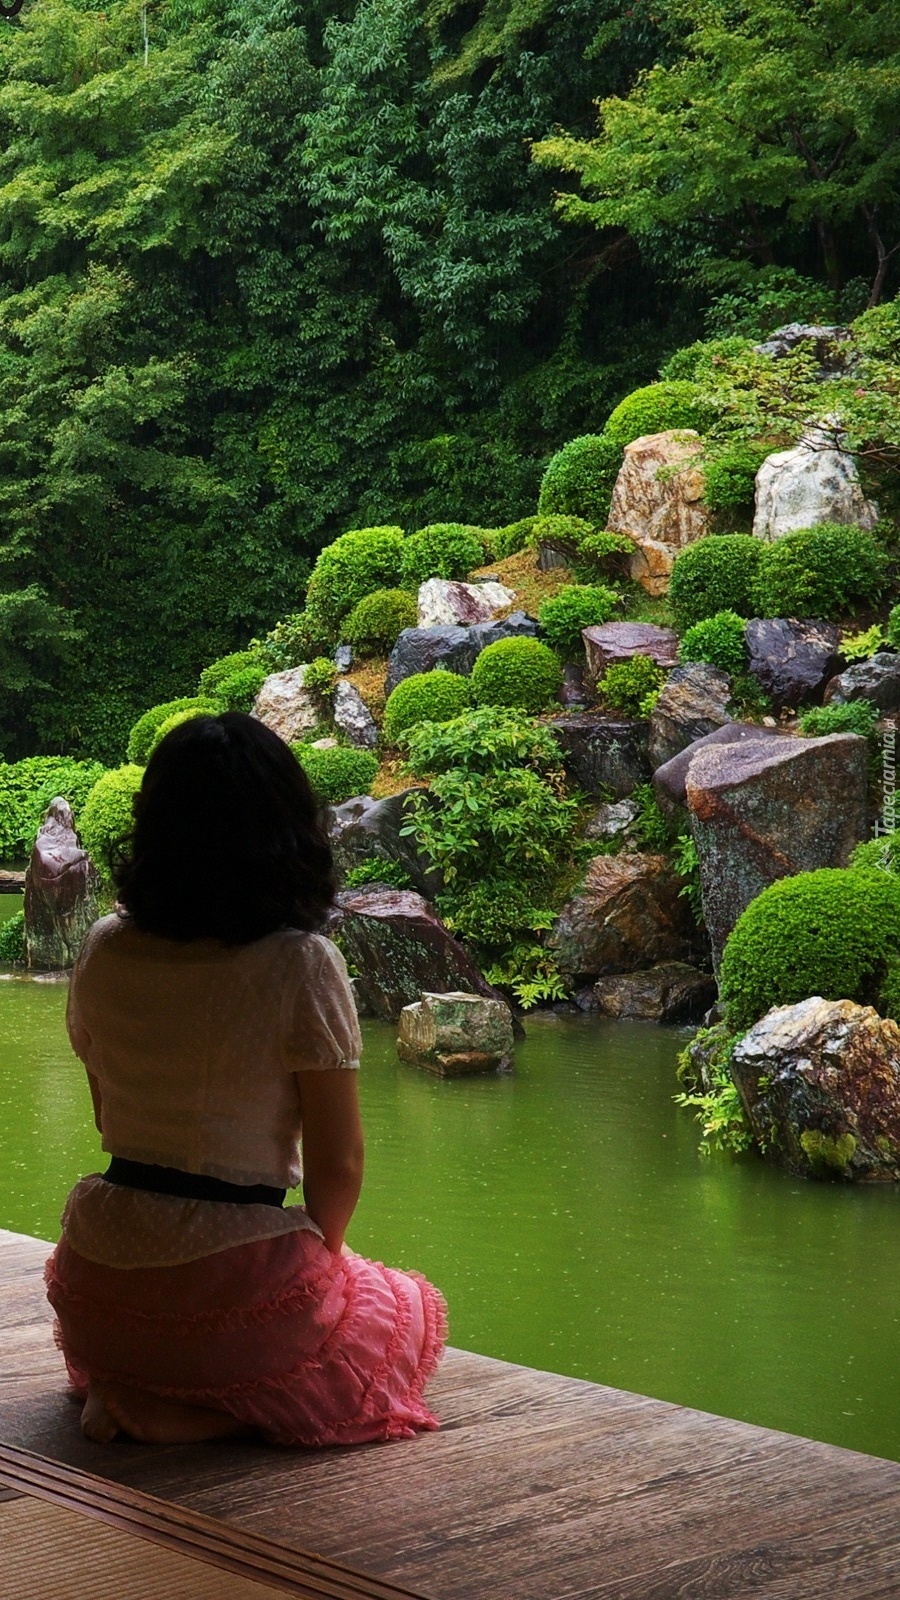 Japoński ogród i dziewczyna